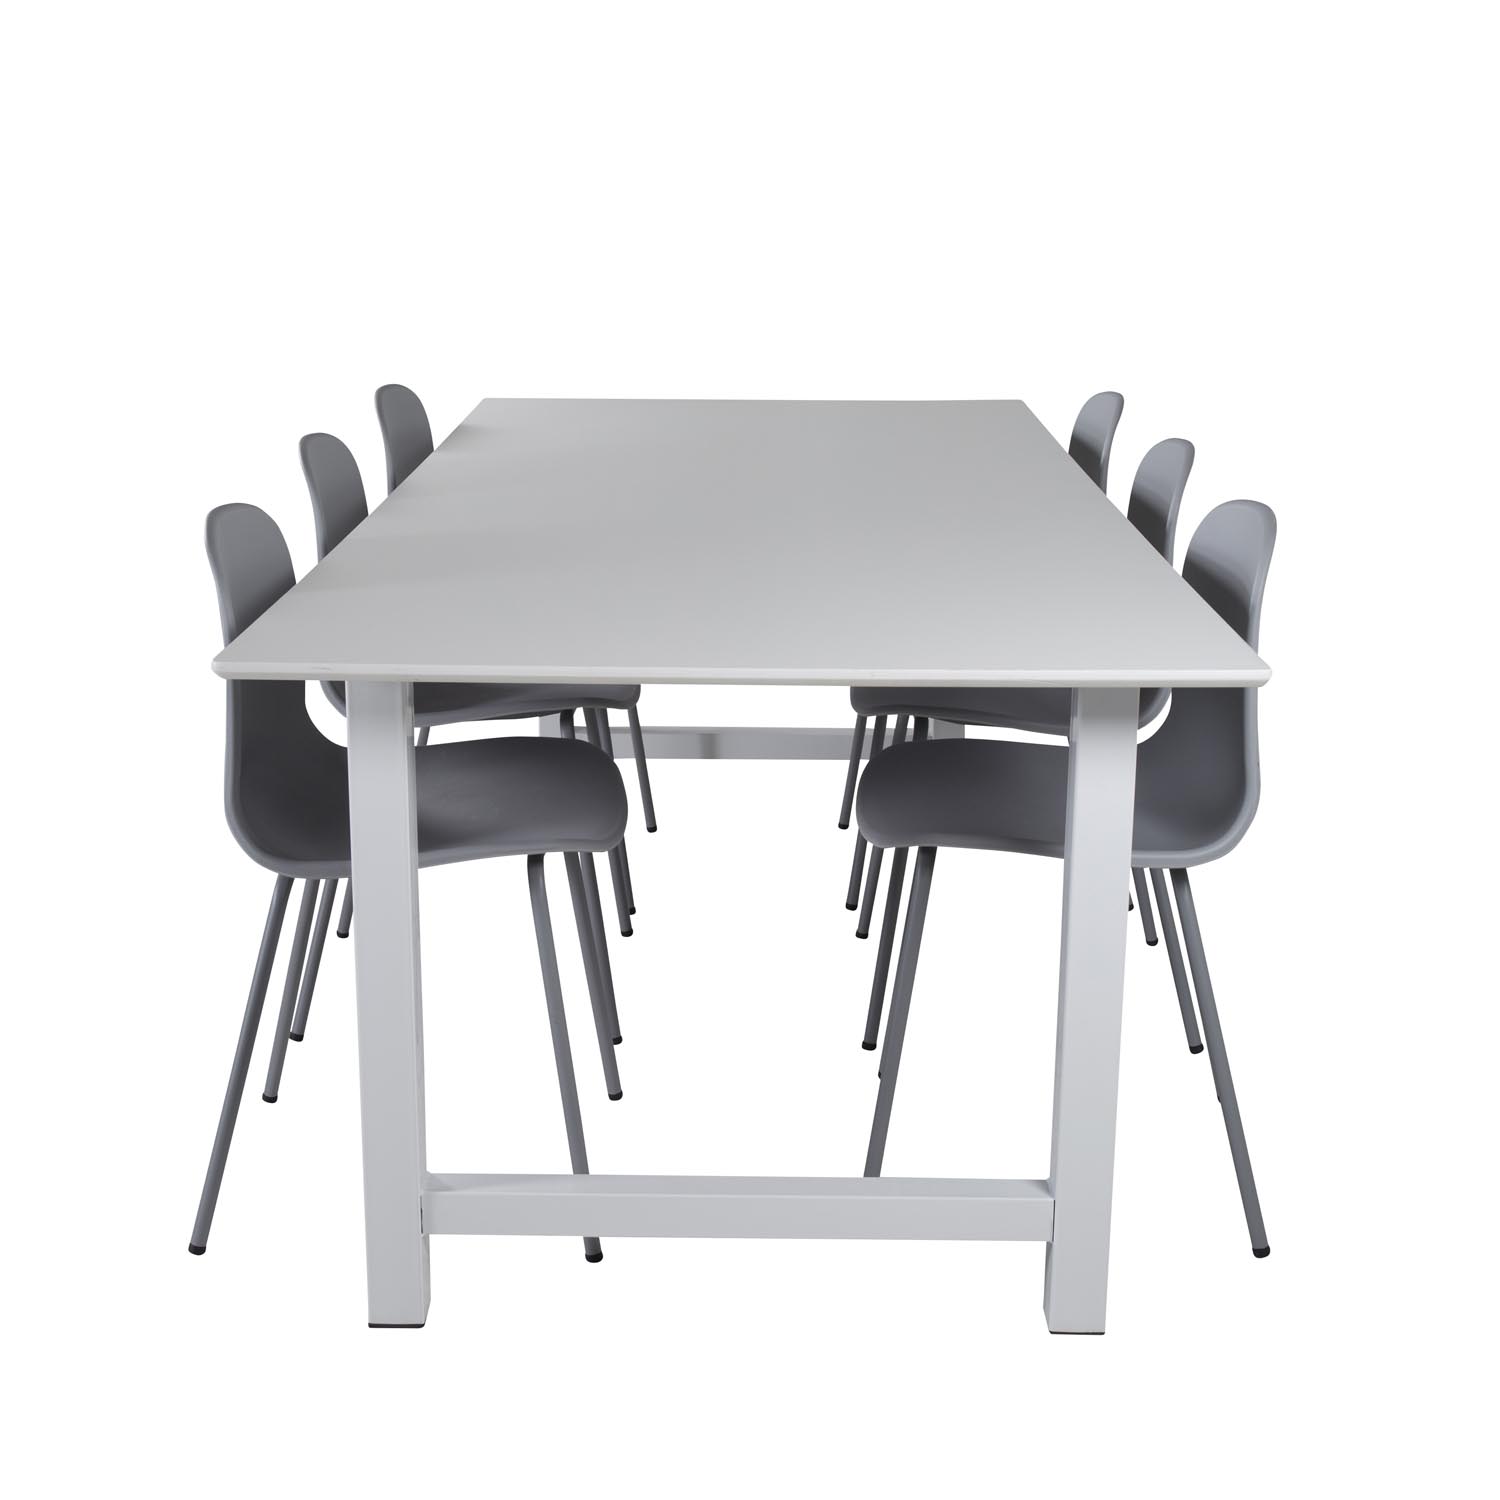 #2 - VENTURE DESIGN Count spisebordssæt, m. 6 stole - hvid MDF/hvid metal og grå plastik/grå metal